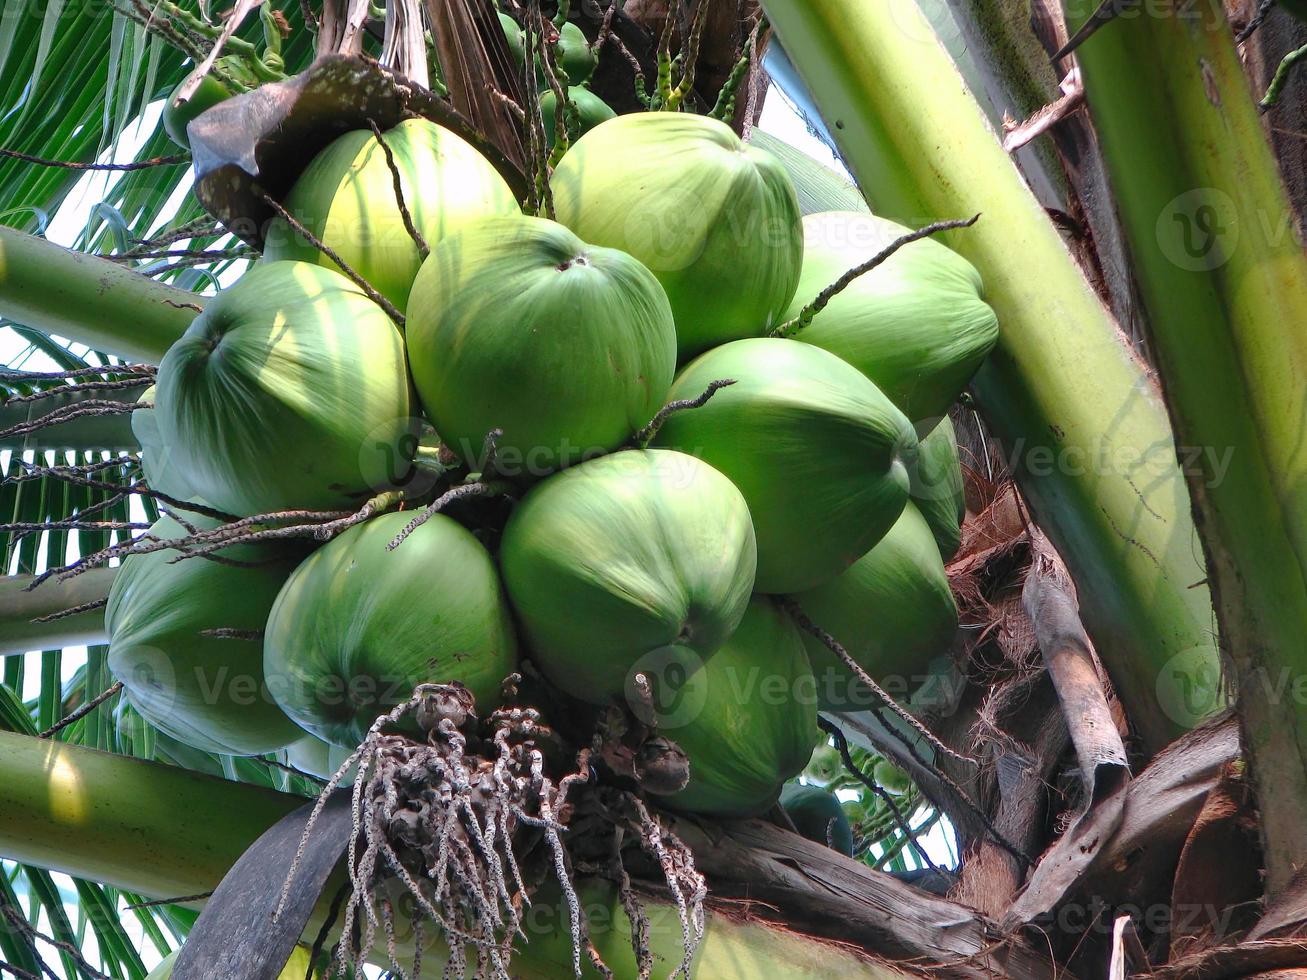 fechar cocos verdes jovens tropicais frescos nas árvores foto